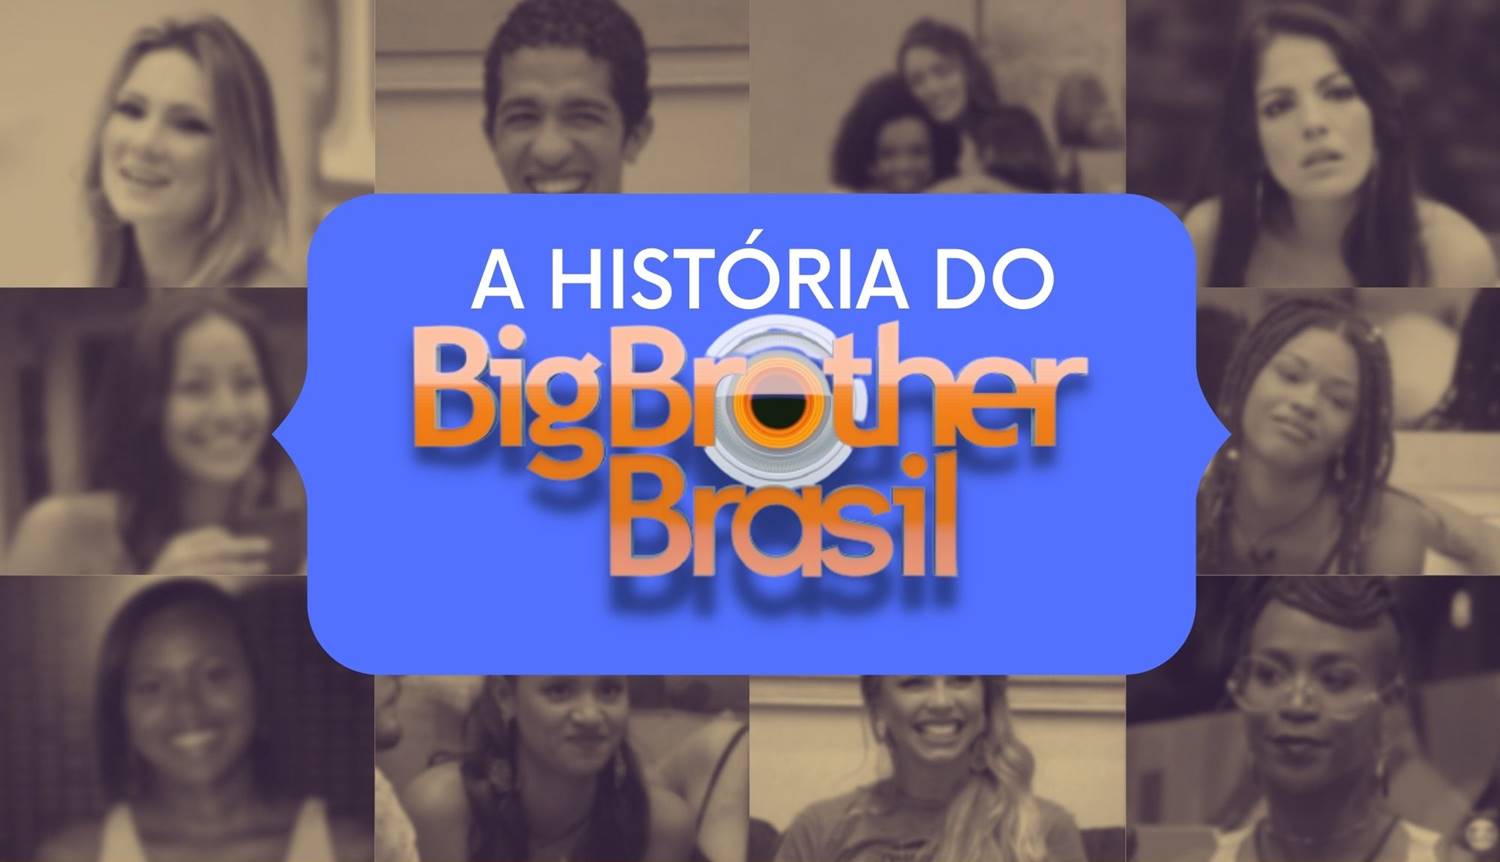 Foto de alguns participantes do BBB com a frase "A História do Big Brother Brasil" escrita.